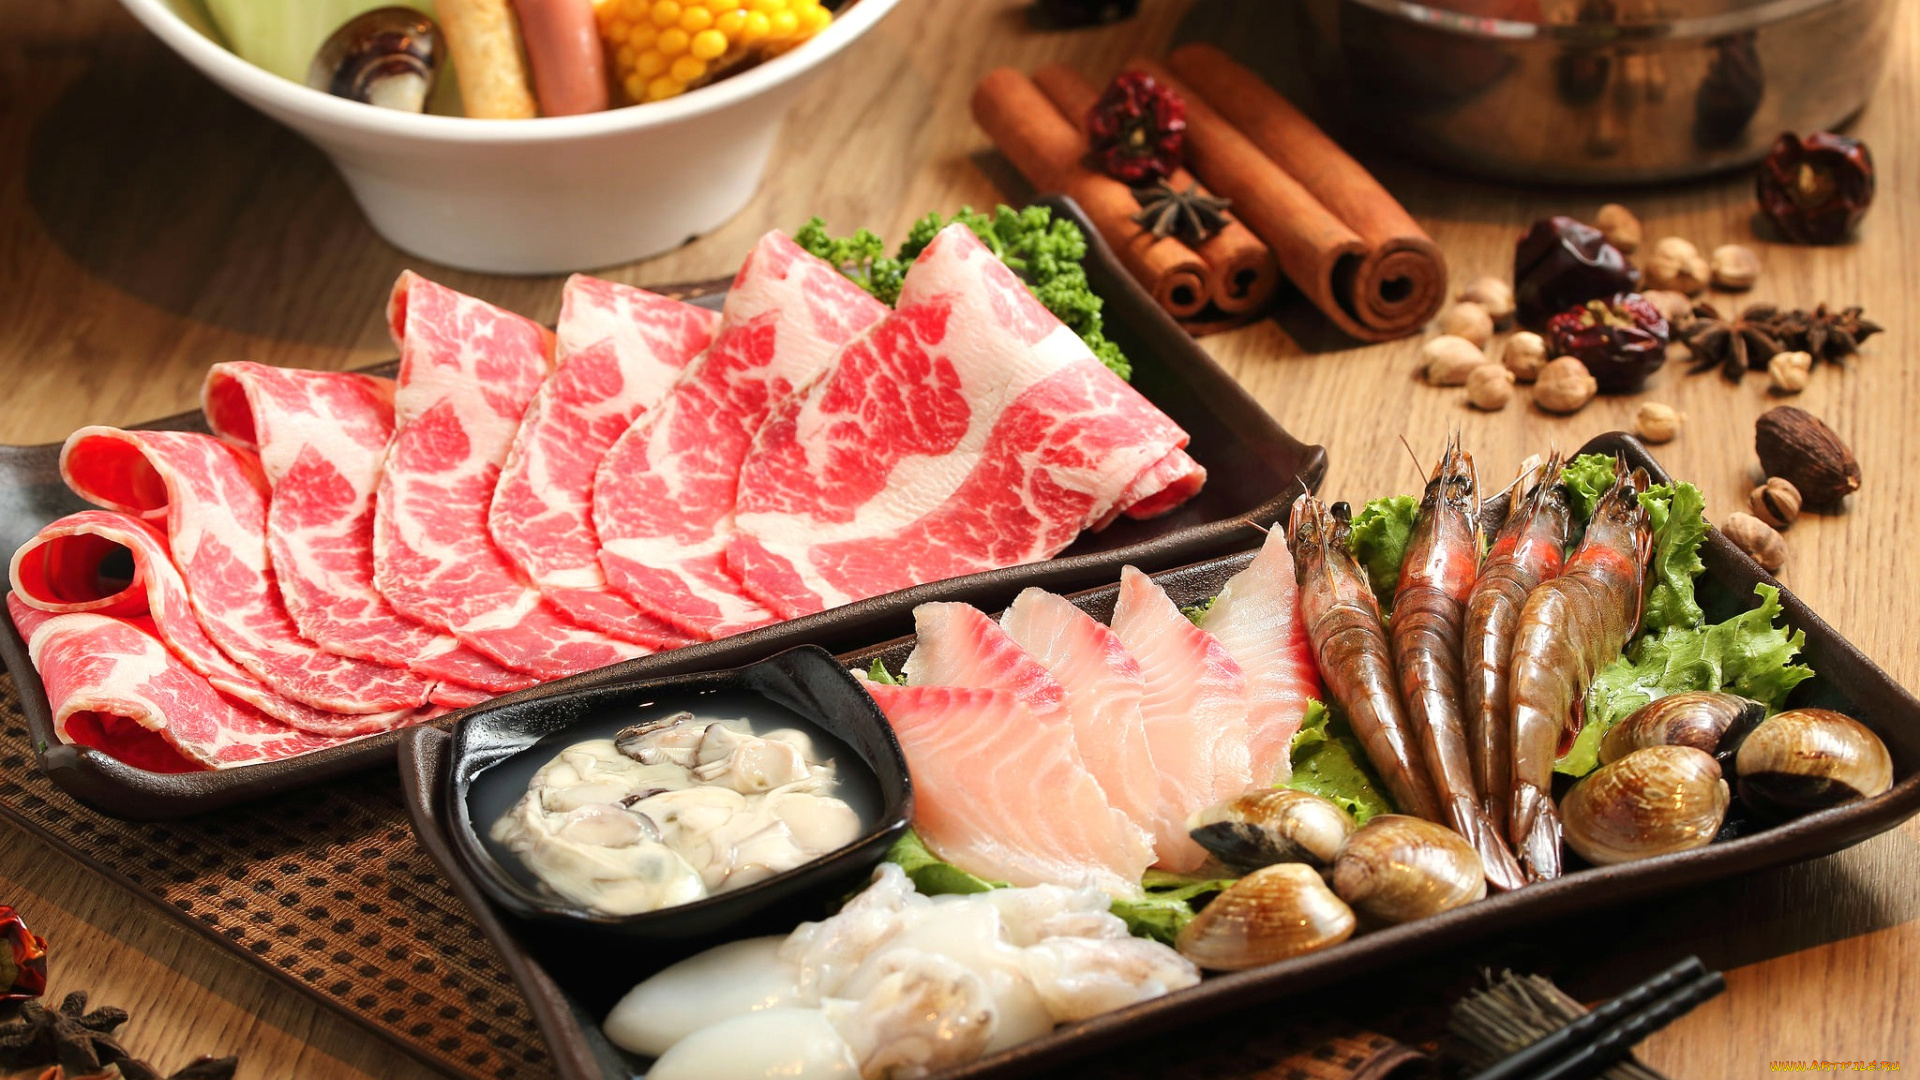 еда, разное, моллюски, мясо, кальмары, бадьян, корица, специи, рыба, креветки, морепродукты, блюда, японская, кухня, ассорти